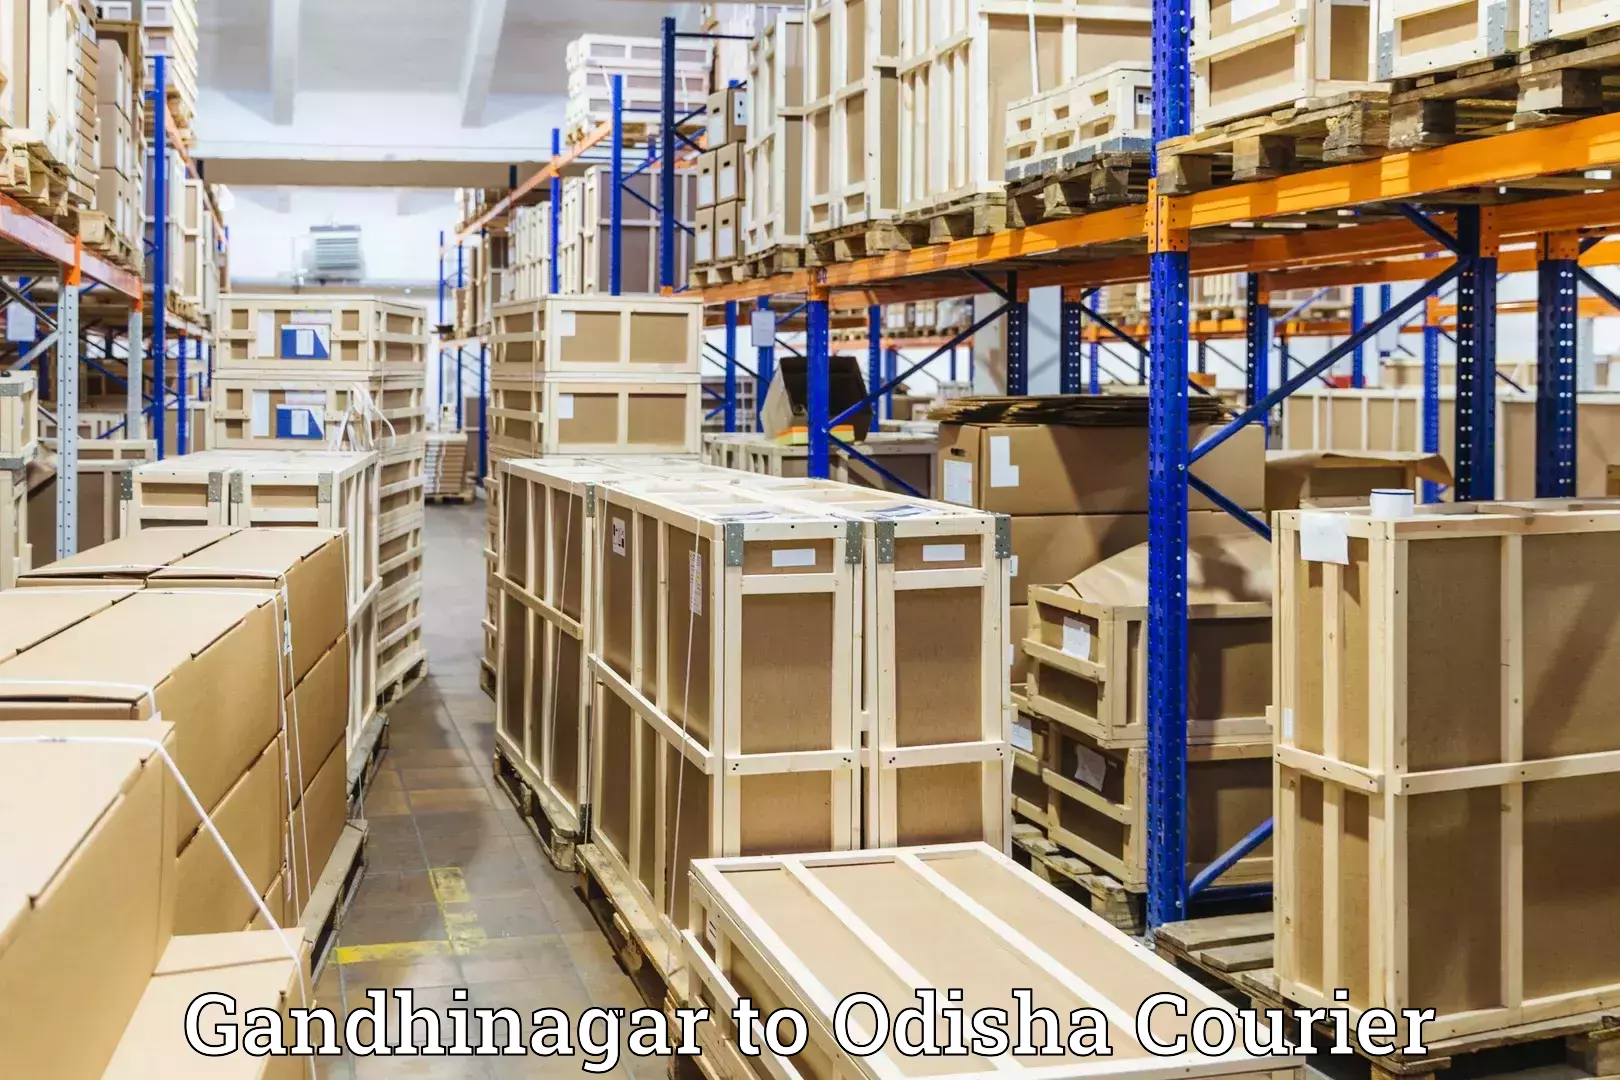 Baggage transport technology Gandhinagar to Astaranga